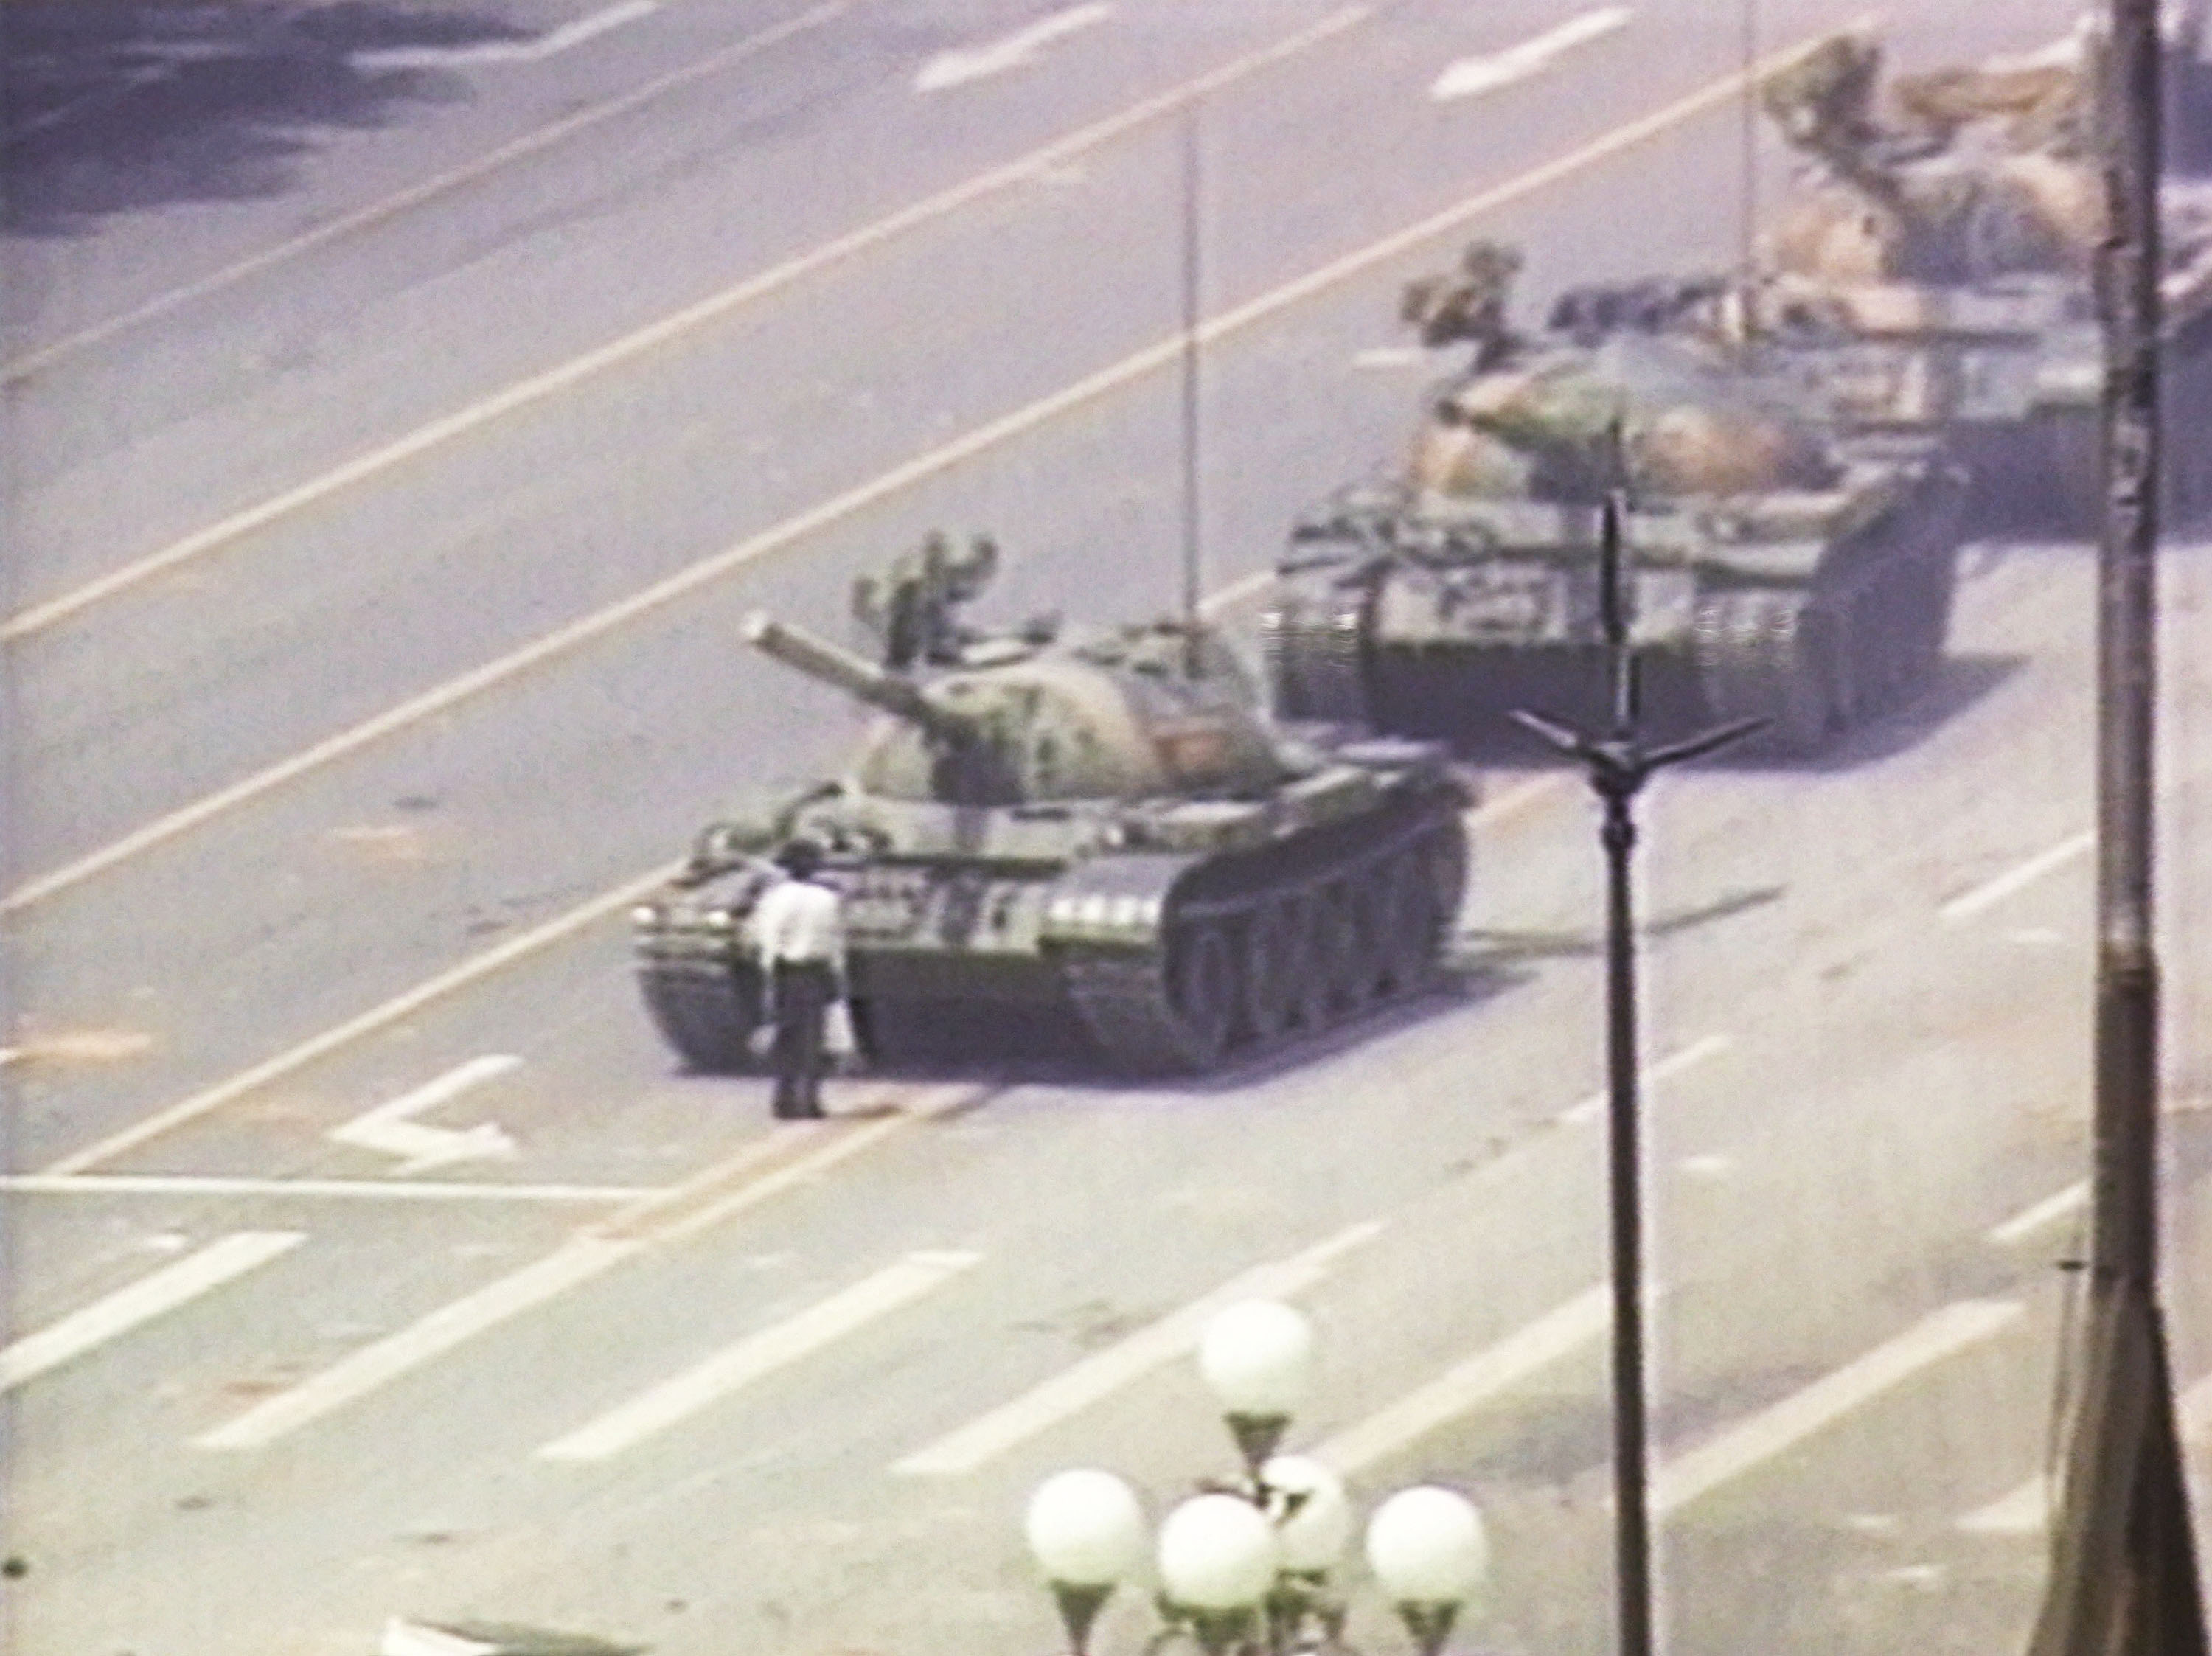 Tiananmen Square